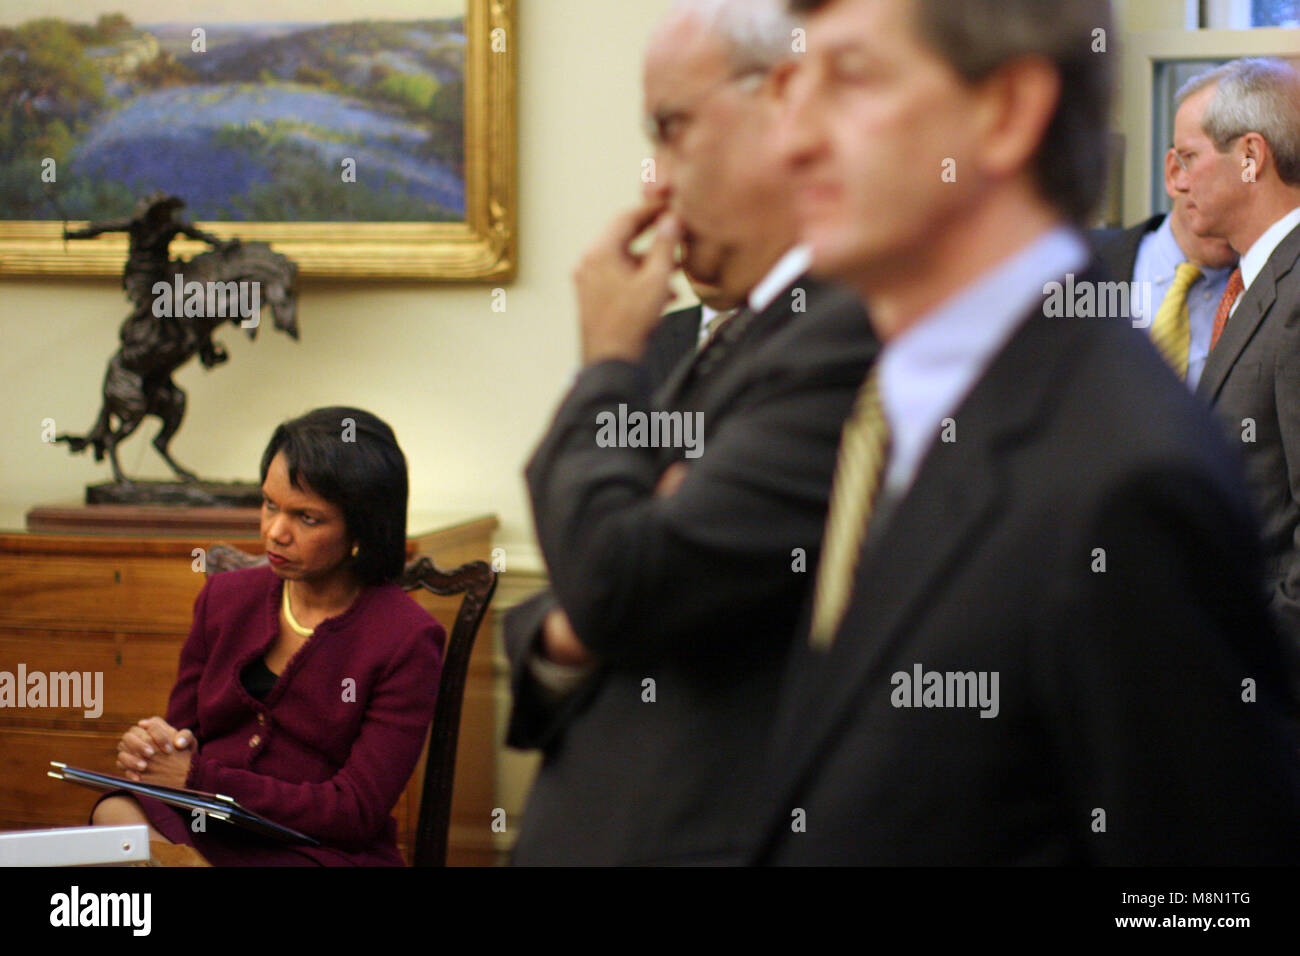 Washington, DC - 19 décembre 2008 -- La secrétaire d'État américaine, Condoleezza Rice est à l'écoute que le président des États-Unis George W. Bush rencontre le président Mahmoud Abbas (Abou Mazen) de l'Autorité palestinienne dans le bureau ovale de la Maison Blanche à Washington DC le vendredi, 19 décembre 2008..Credit : Ken Cedeno / Piscine via CNP /MediaPunch Banque D'Images